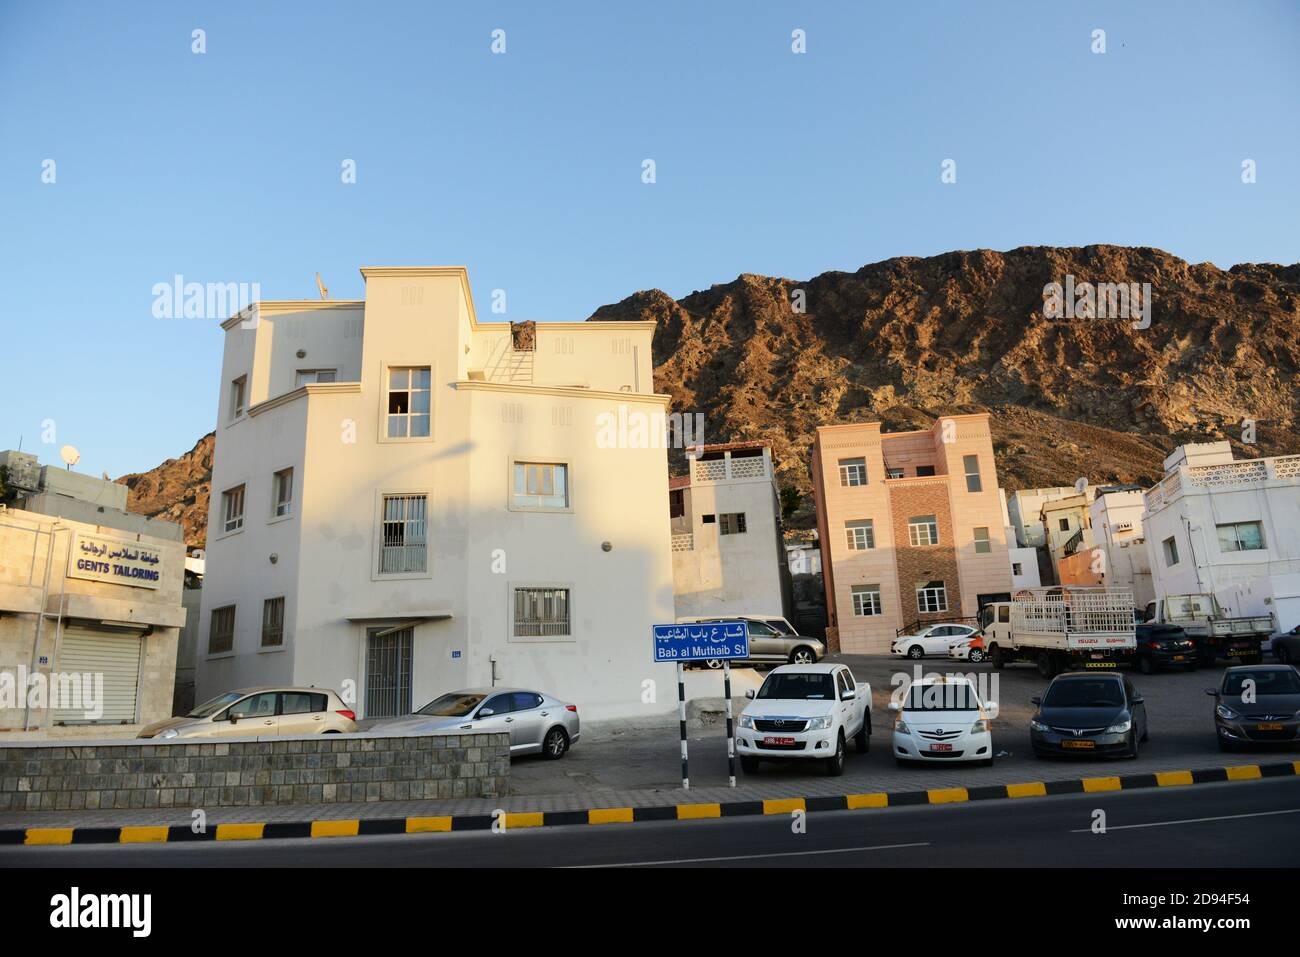 Wunderschöne omanische Gebäude im alten Maskat, Oman. Stockfoto